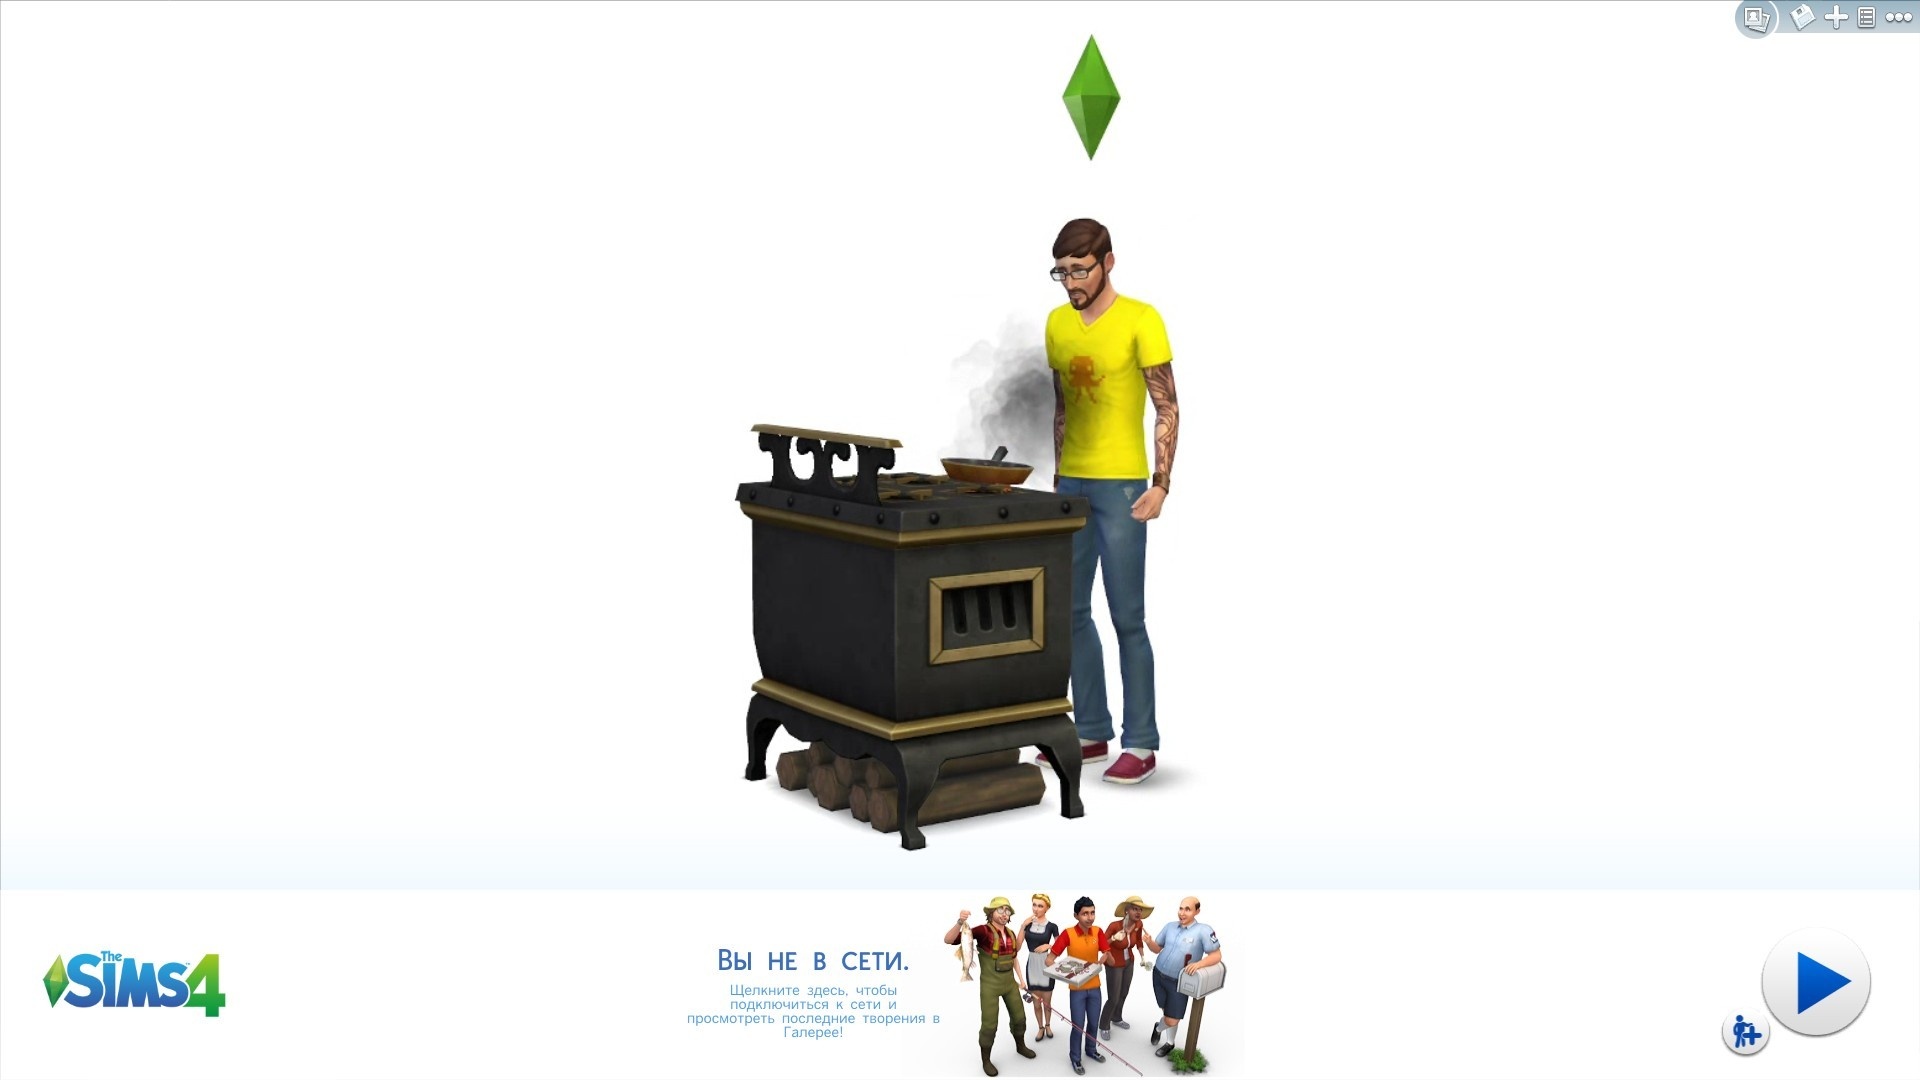 Форум The Sims : Программа запуска игры The Sims 3 - Форум The Sims